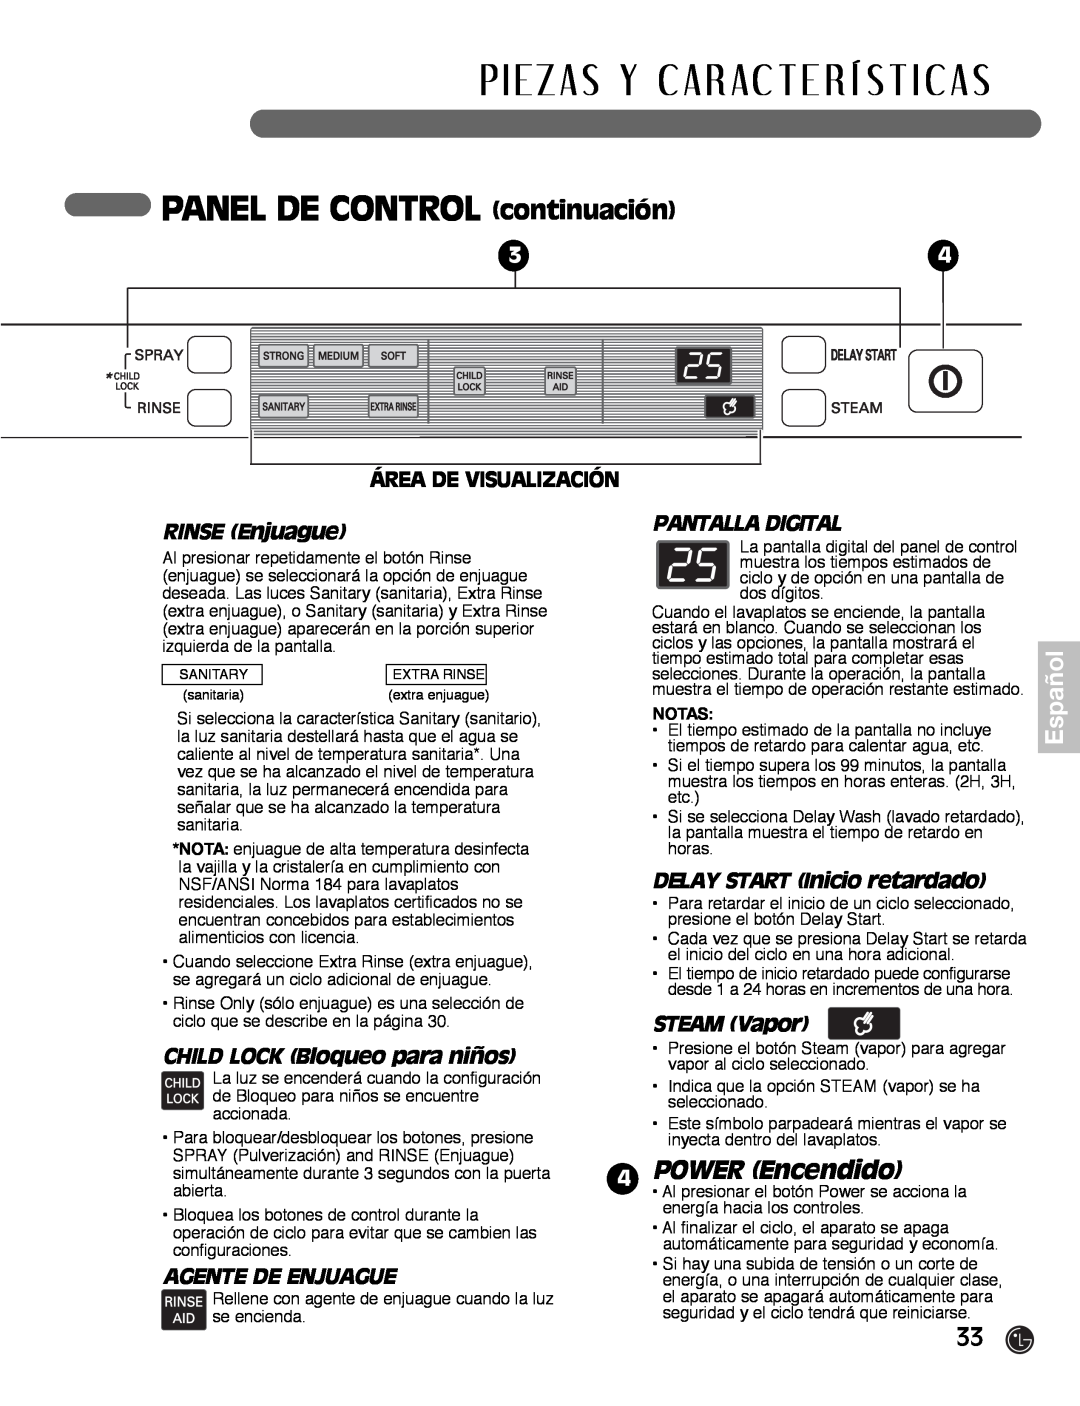 LG Electronics LDF7932WW PANEL DE CONTROL continuación, POWER Encendido, Área De Visualización, RINSE Enjuague, Español 